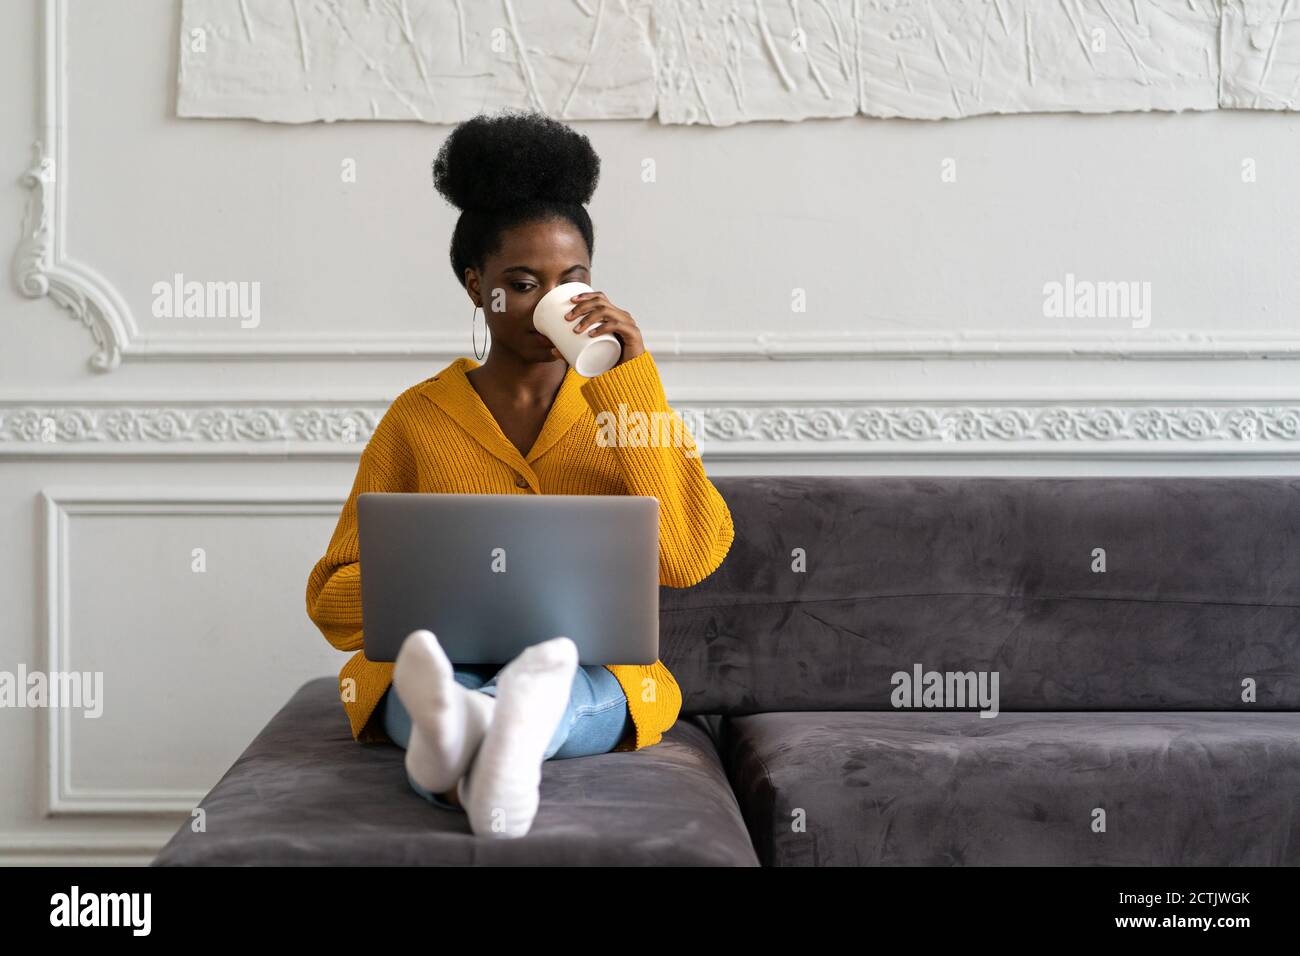 Femme biraciale afro-américaine avec une coiffure afro-américaine dans un gilet jaune assis sur un canapé, travaillant en ligne sur un ordinateur portable, regardant un séminaire en ligne ou des vidéos en m social Banque D'Images